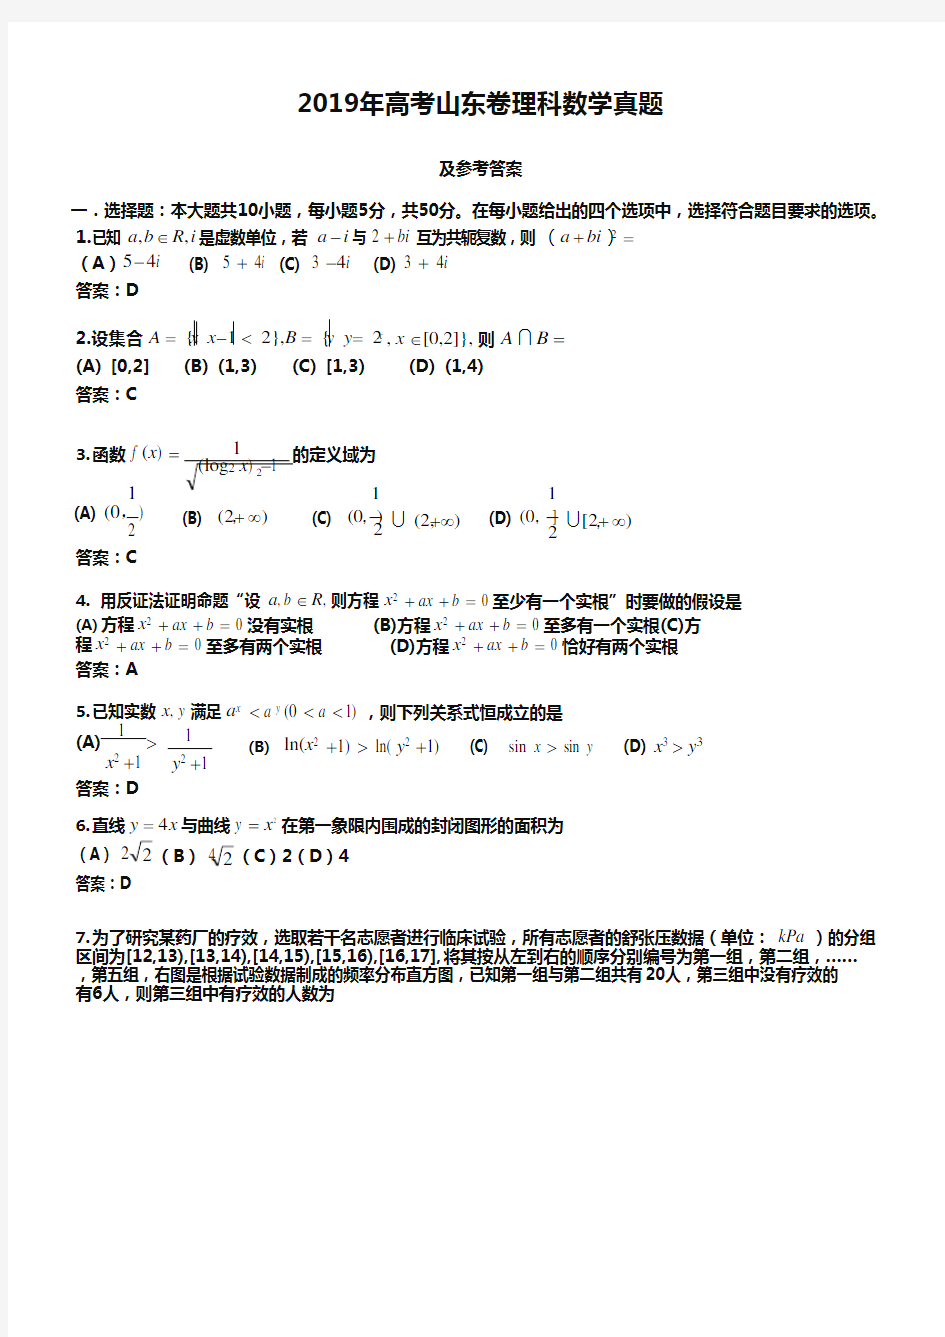 (完整版)2019年山东省高考理科数学试卷及答案【版】,推荐文档